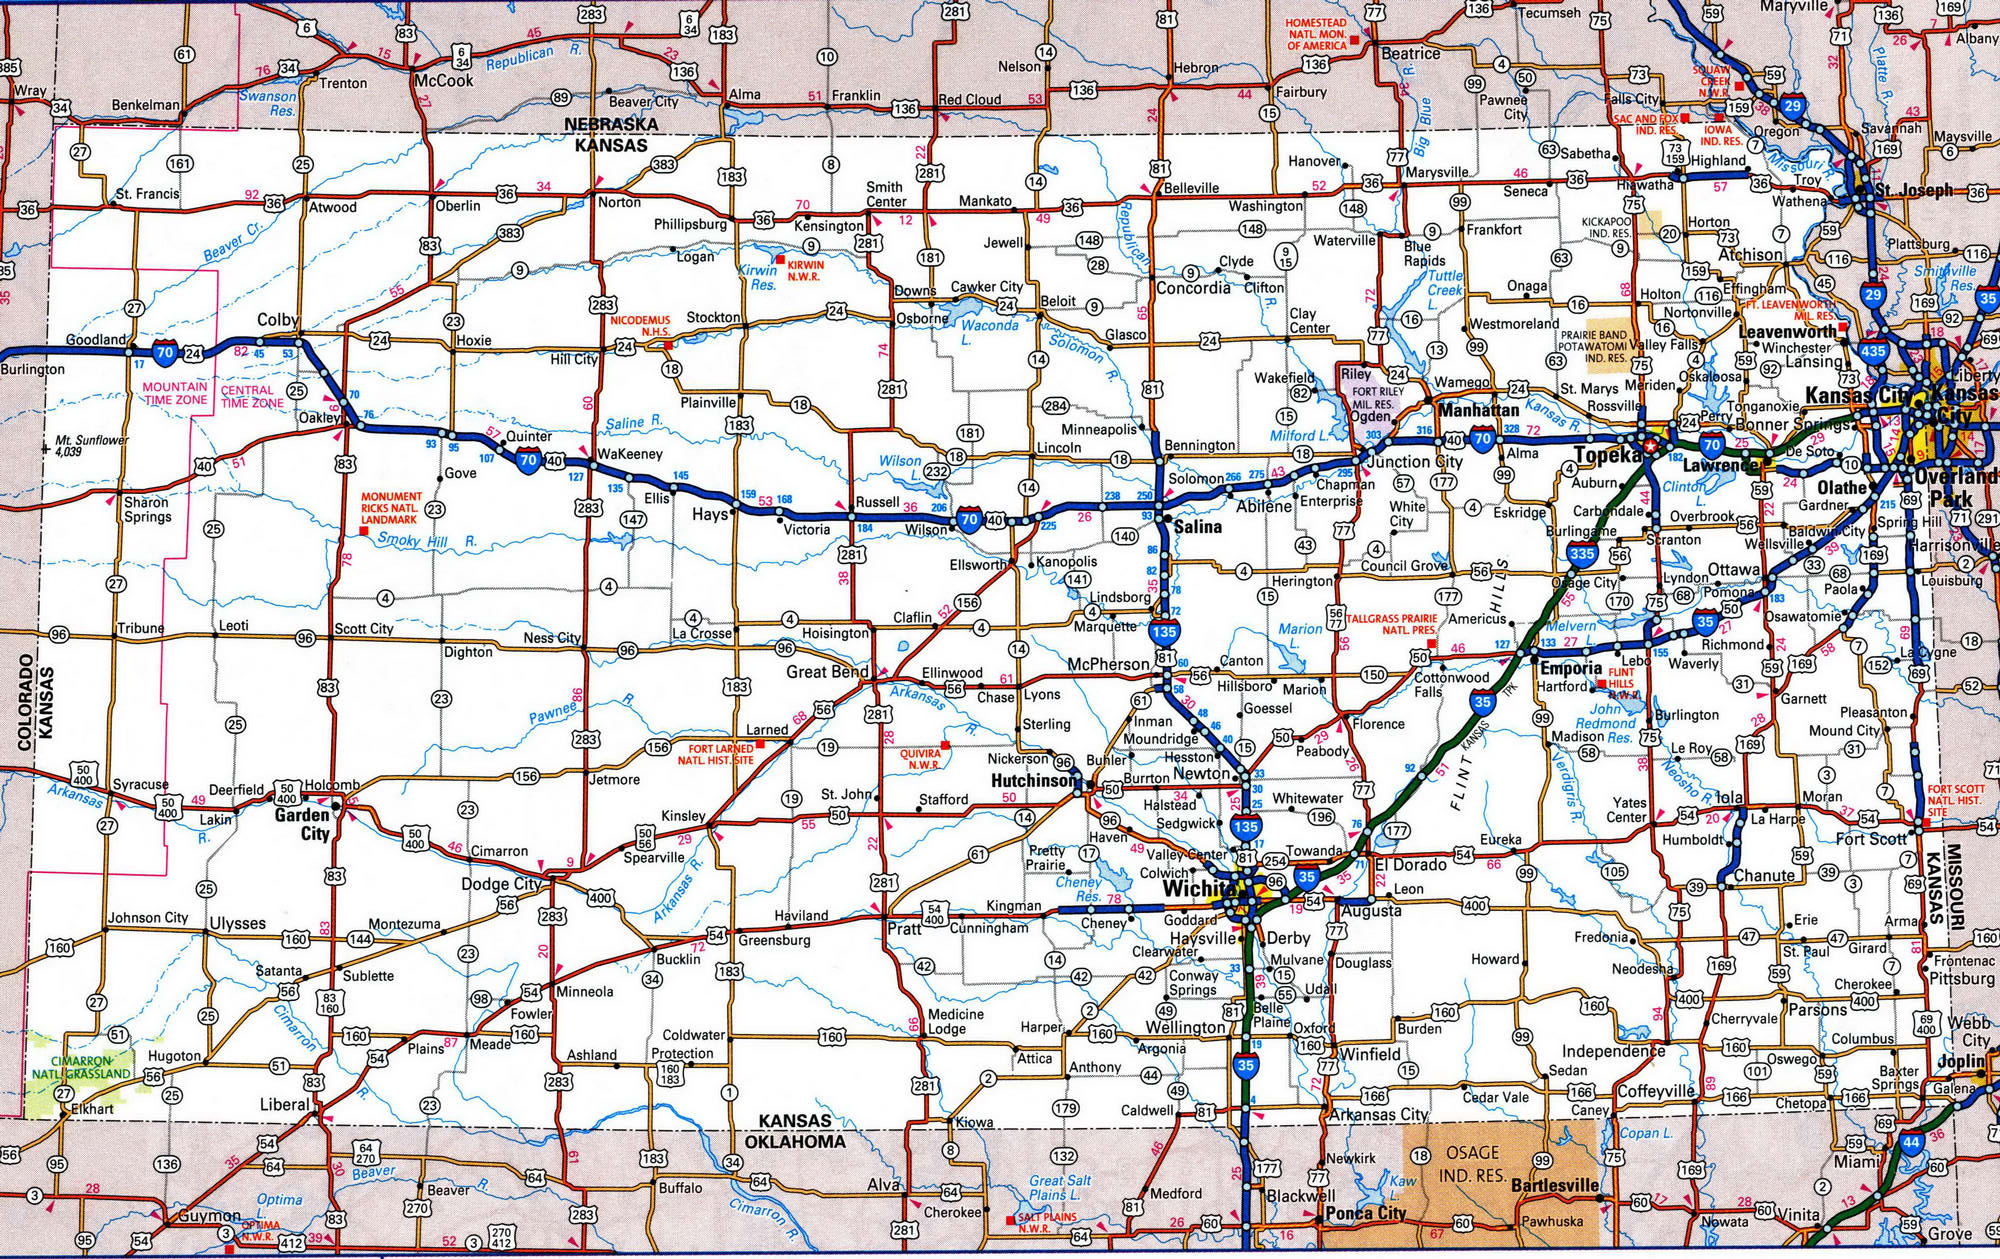 Detailed roads map of Kansas